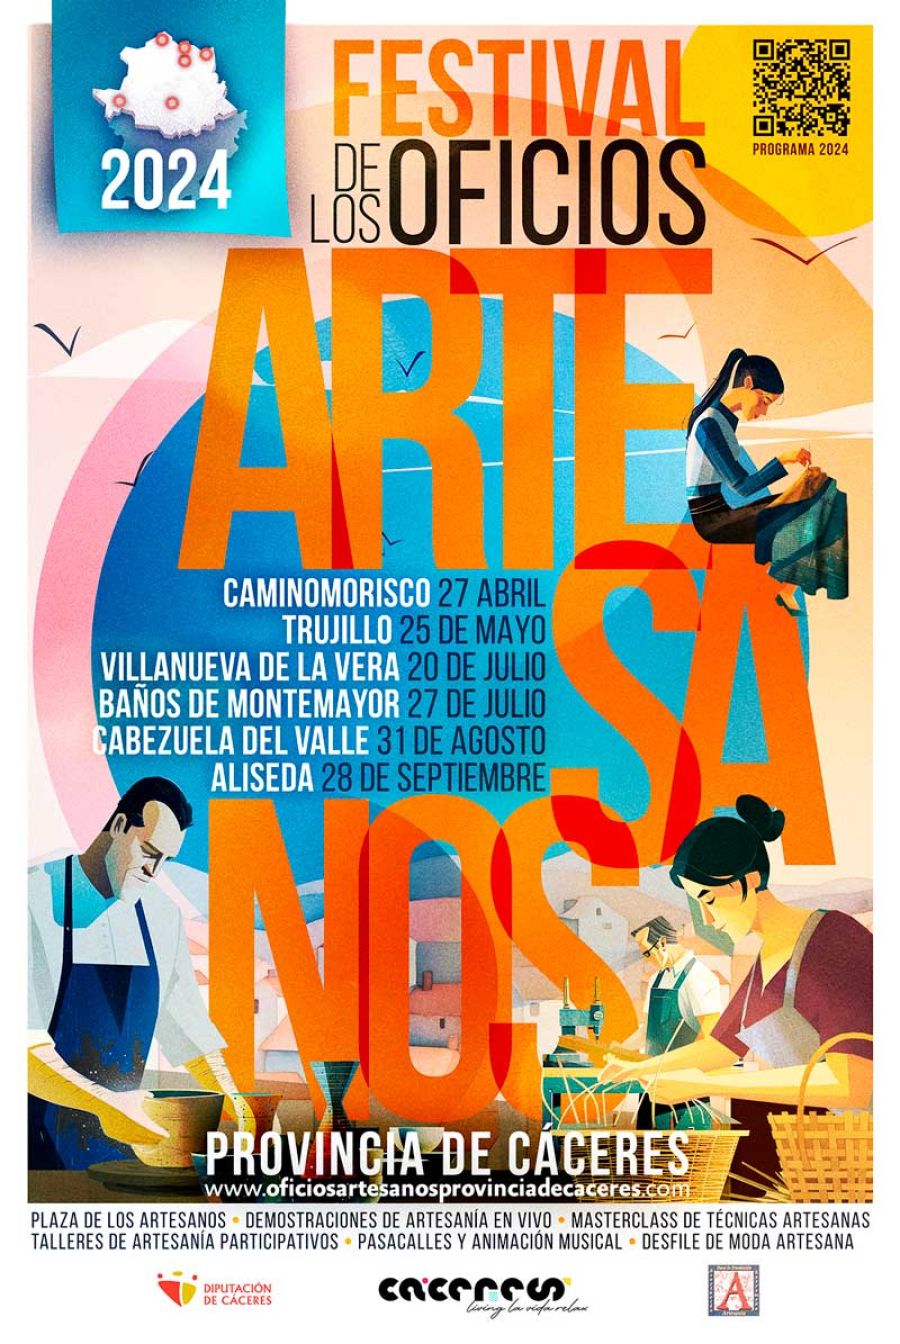 Festival de Oficios Artesanos de la Provincia de Cáceres 2024 | CABEZUELA DEL VALLE